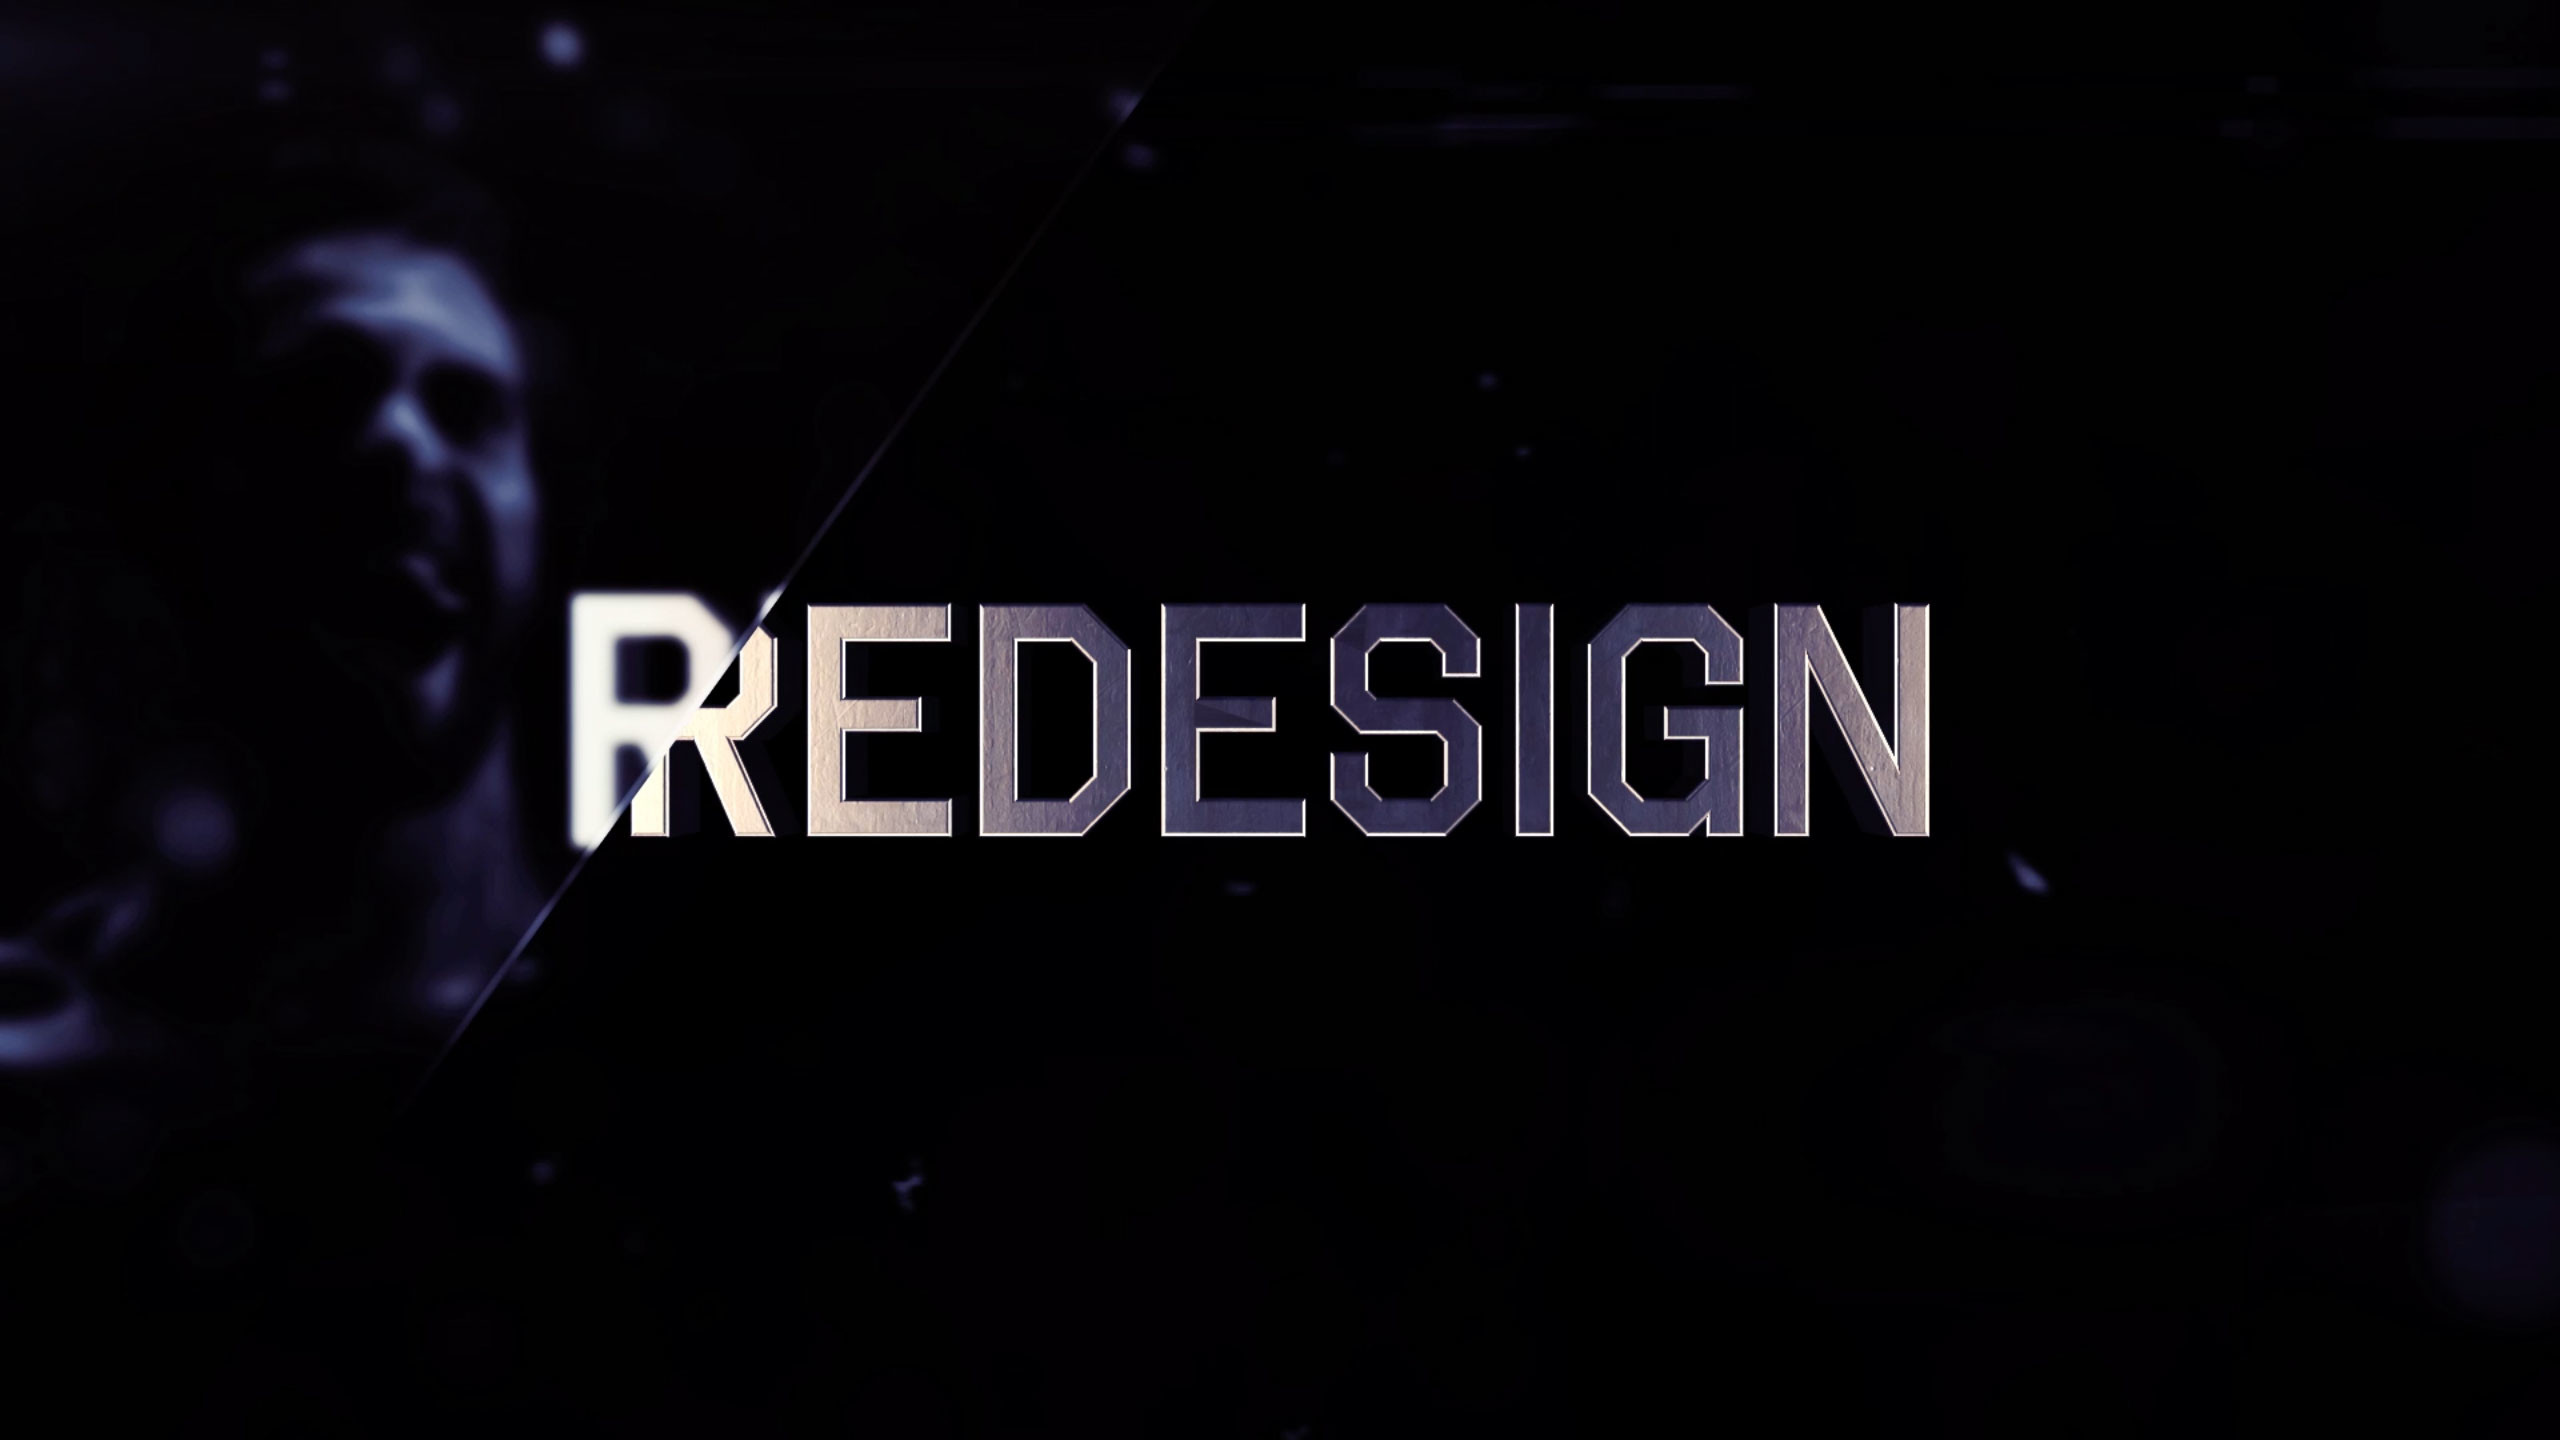 2560x1440 Image: Seth Rollins: Redesign. Rebuild. Reclaim.